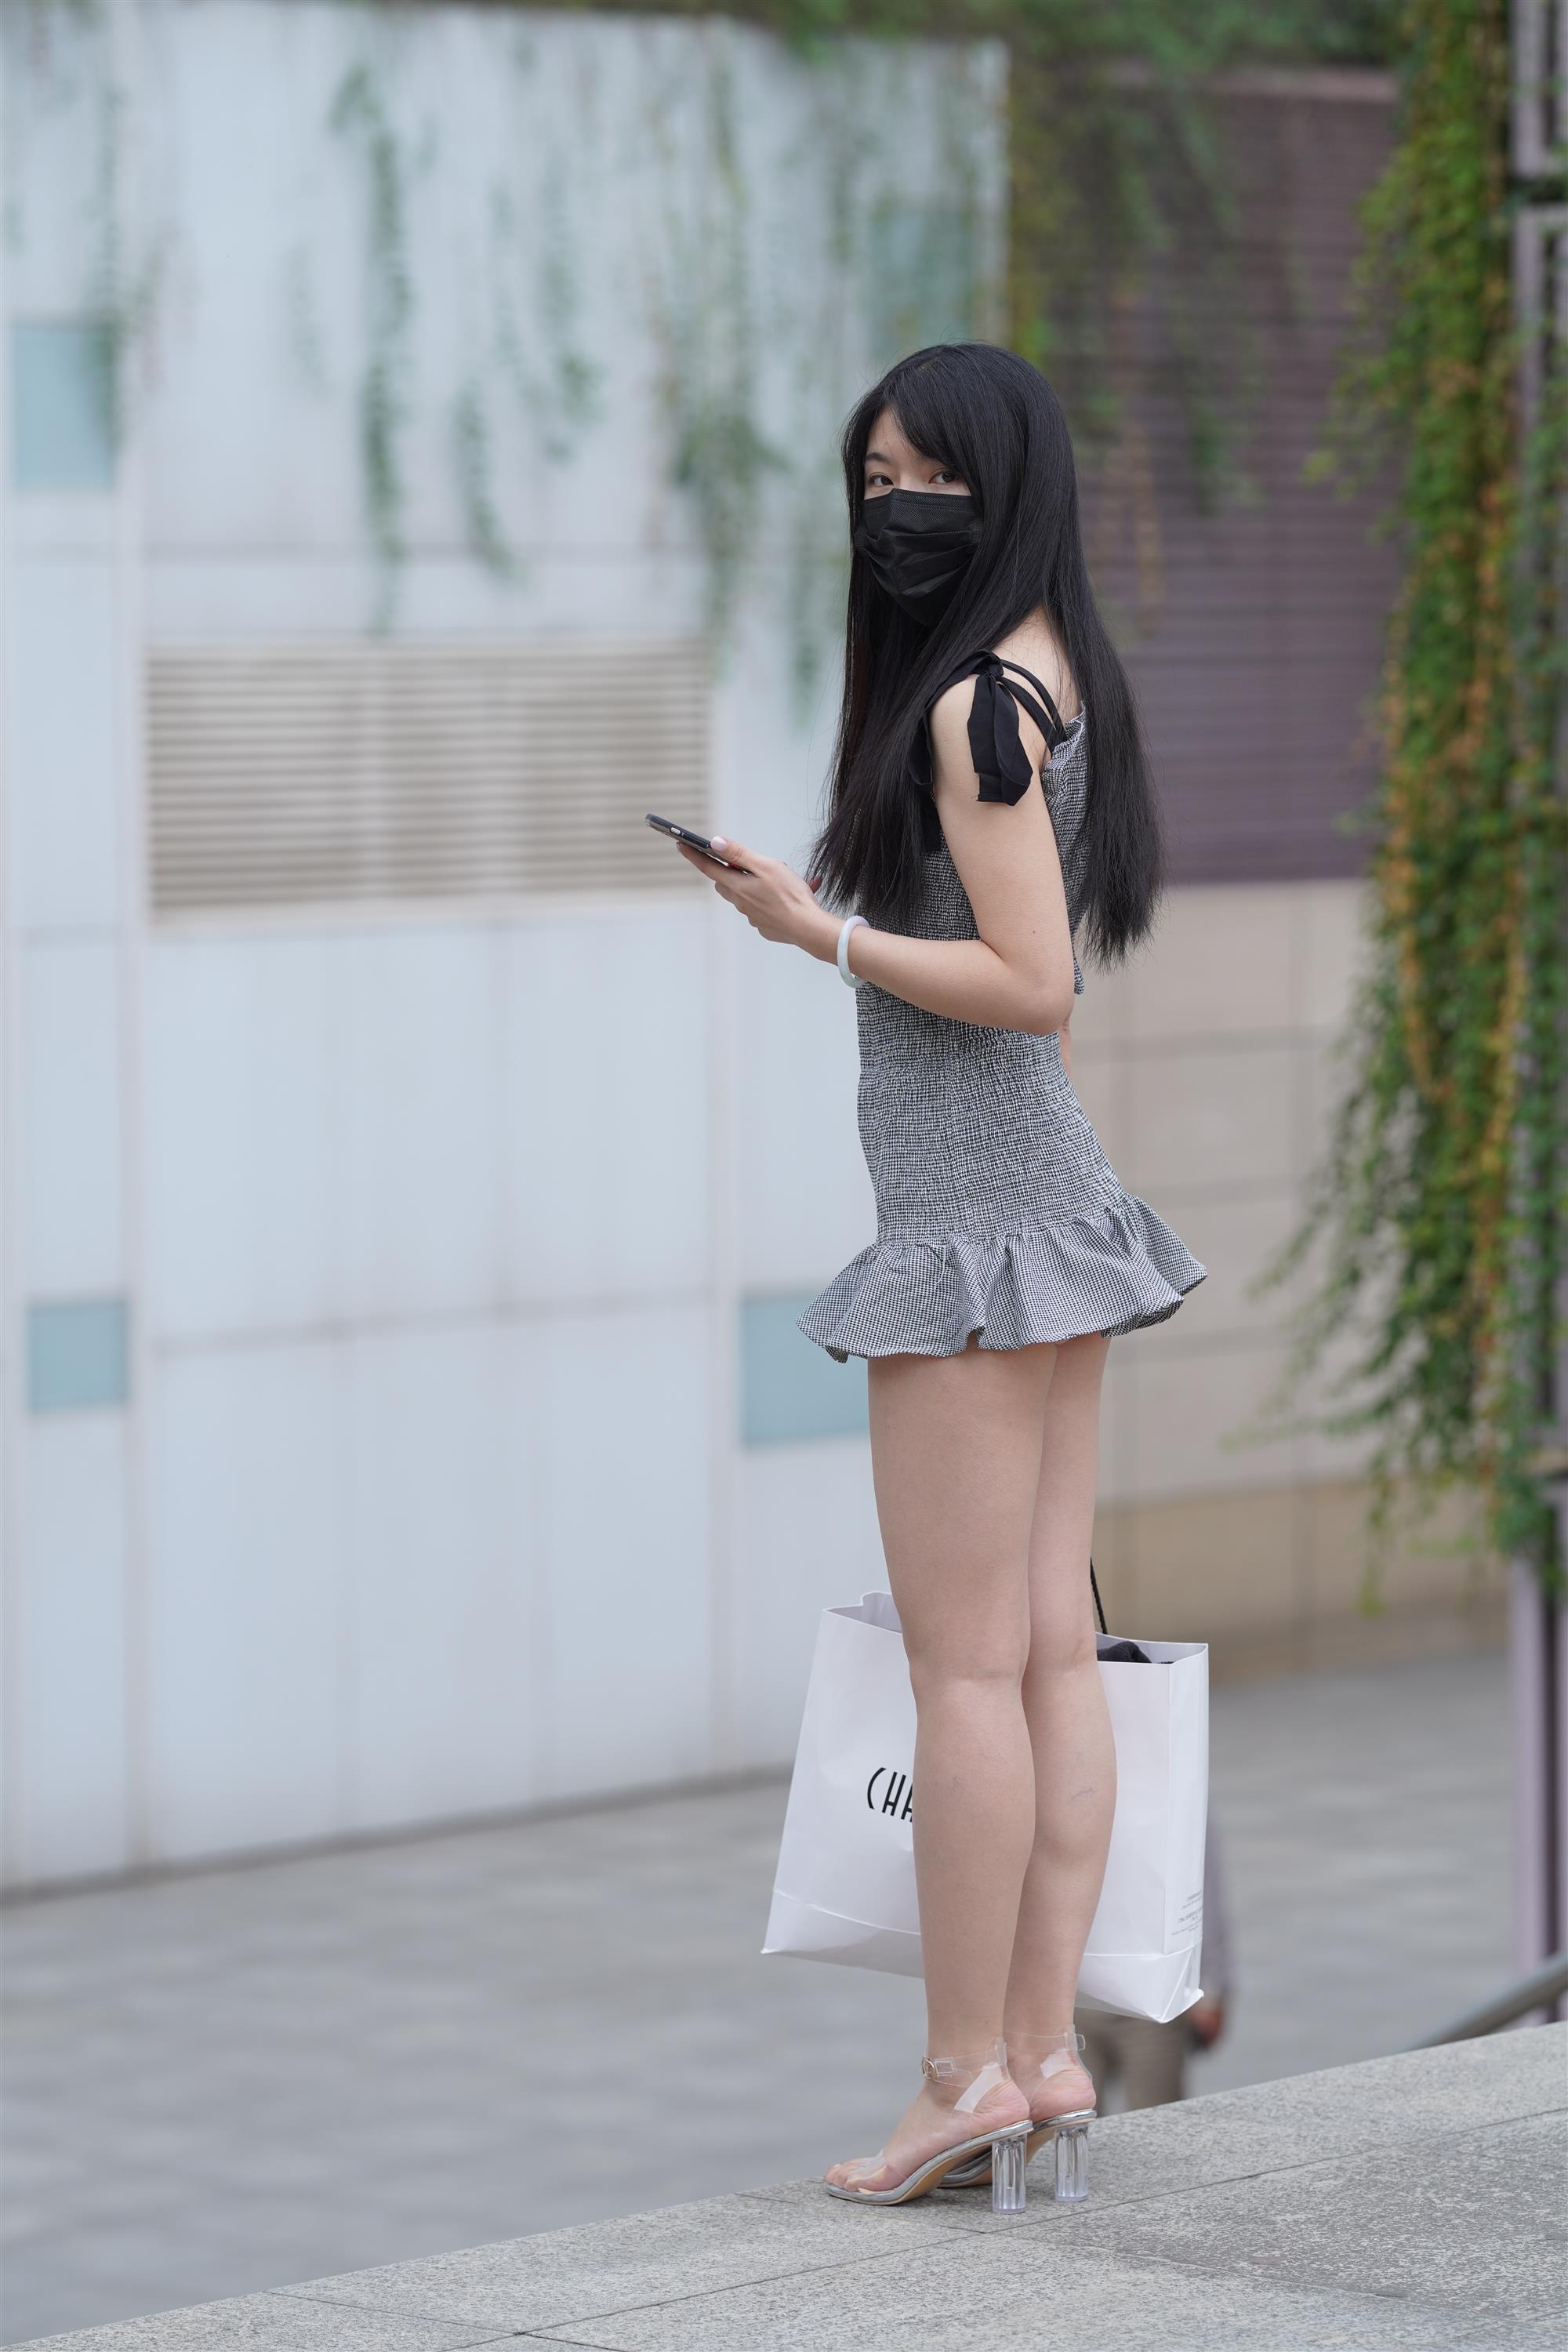 Street Girl In Short Skirt - 226.jpg